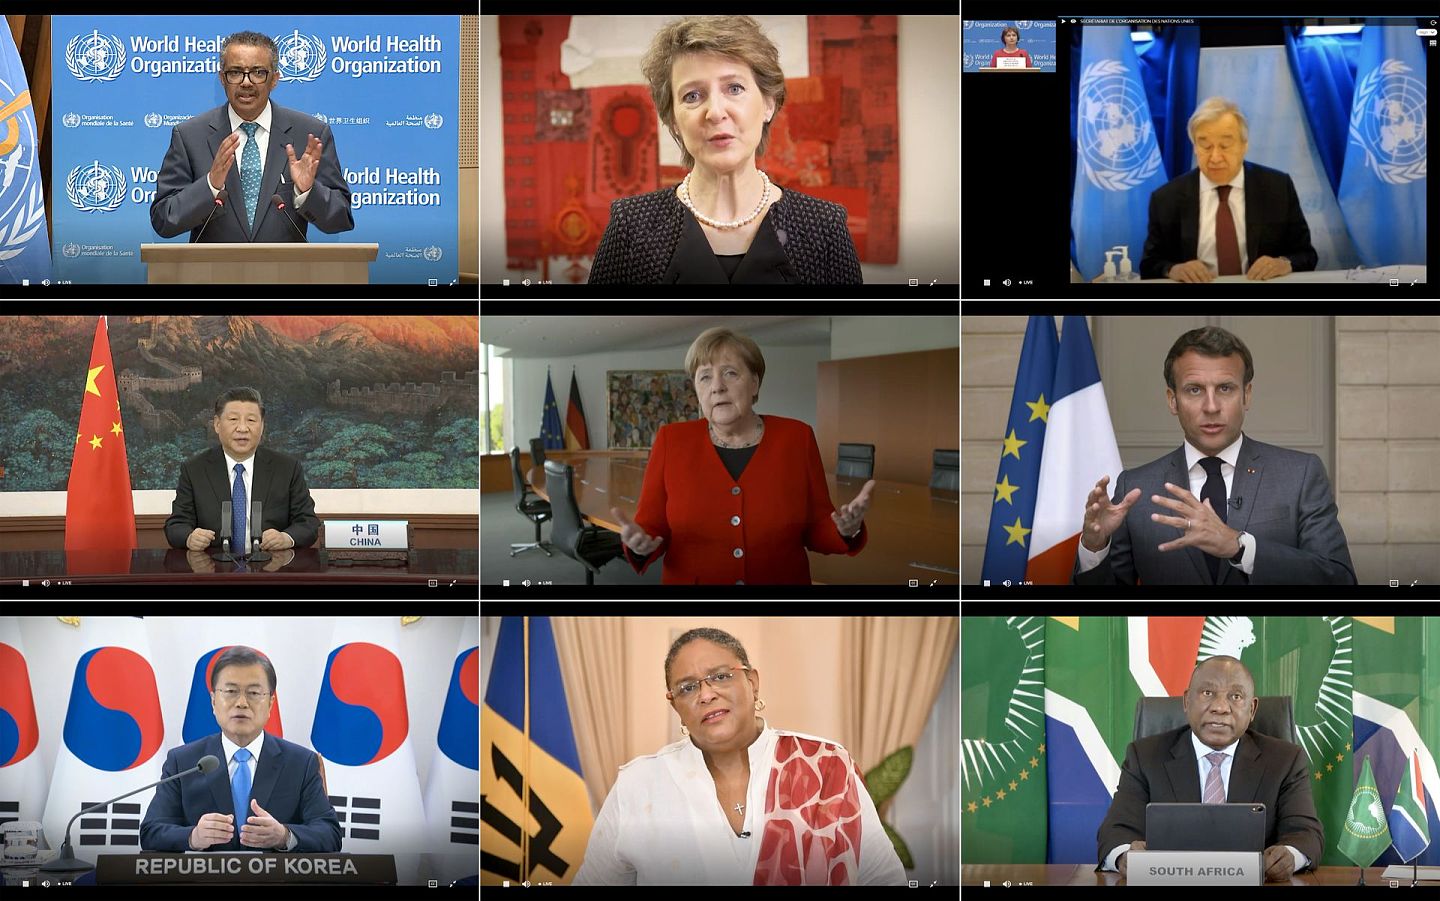 第73届世界卫生大会以视频会议方式开幕。各国领导人在讲话中呼吁加强国际合作共同抗击新冠肺炎疫情，并强调疫苗与医疗方法应全球共享。（AFP）